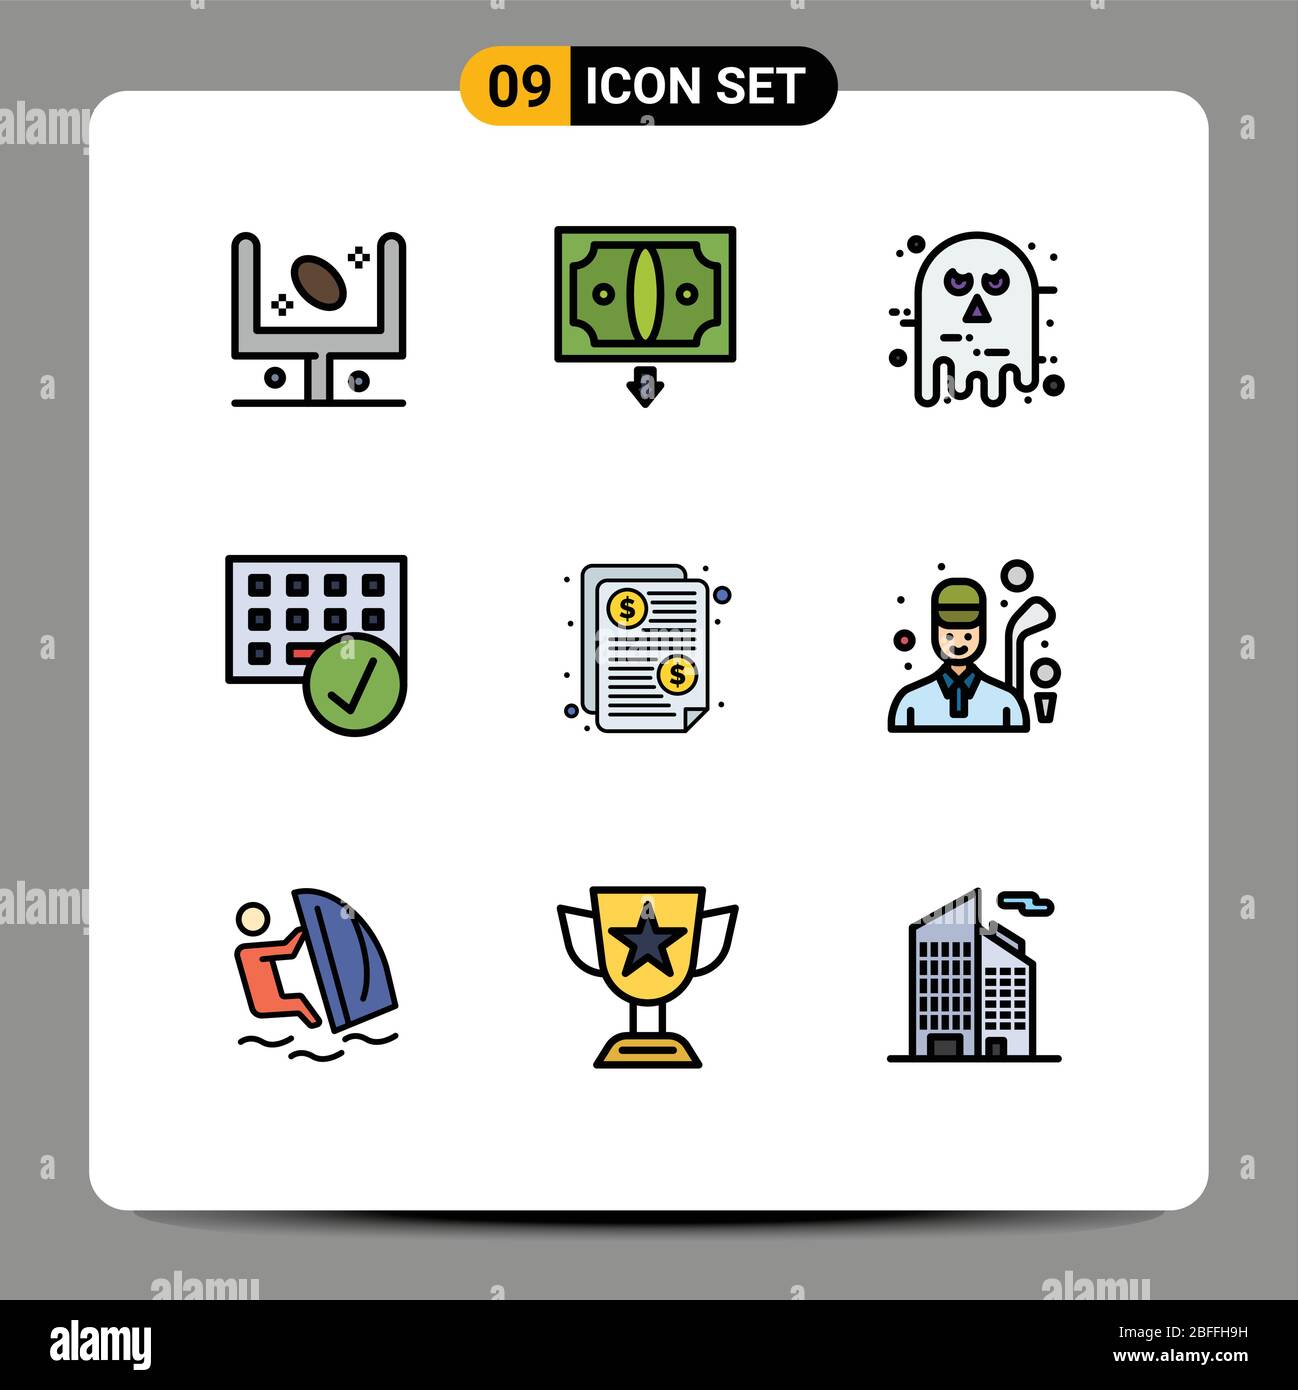 Ensemble de 9 icônes modernes d'interface utilisateur symboles signes pour gadget, connecté, argent, ordinateurs, halloween Editable Vector Design Elements Illustration de Vecteur